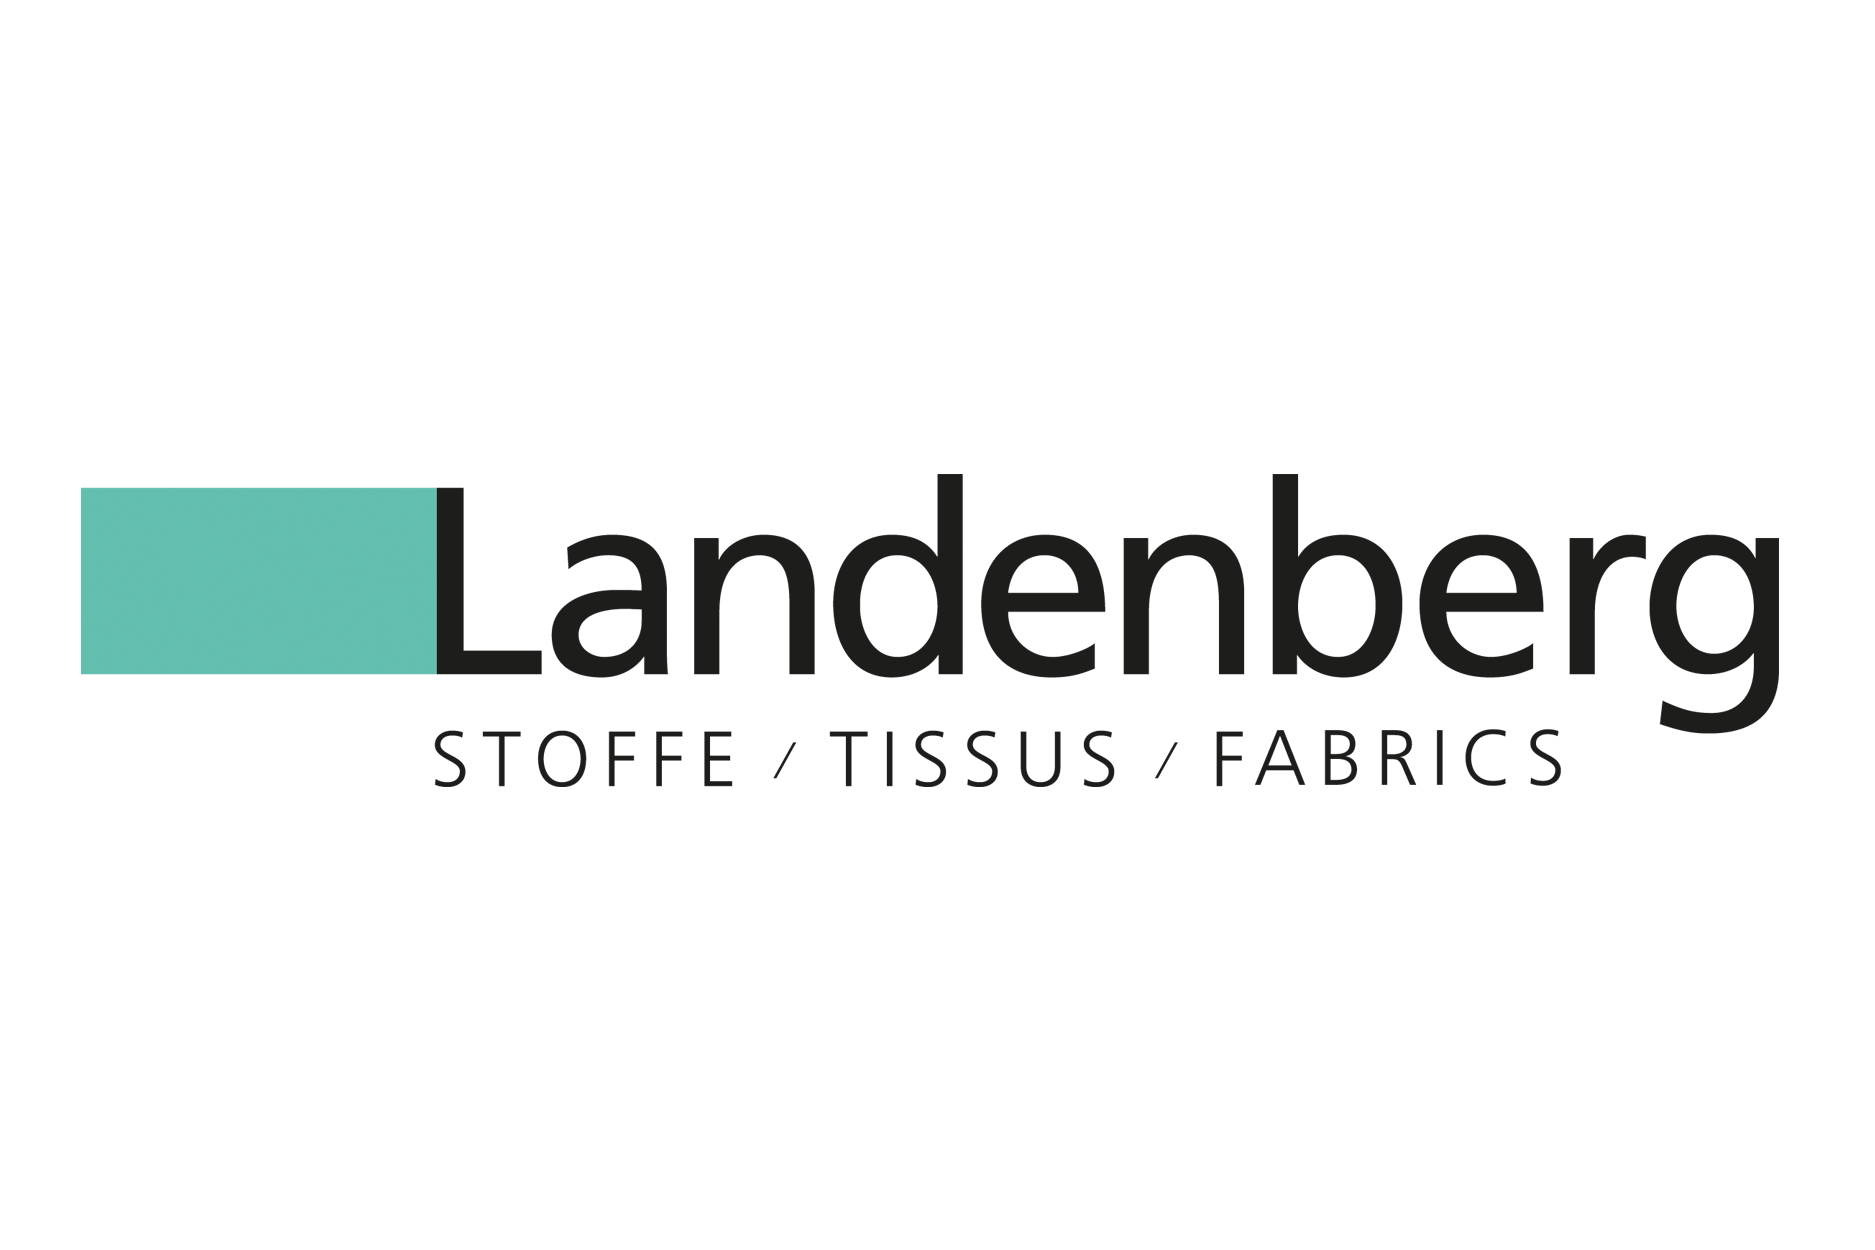 Landenberg